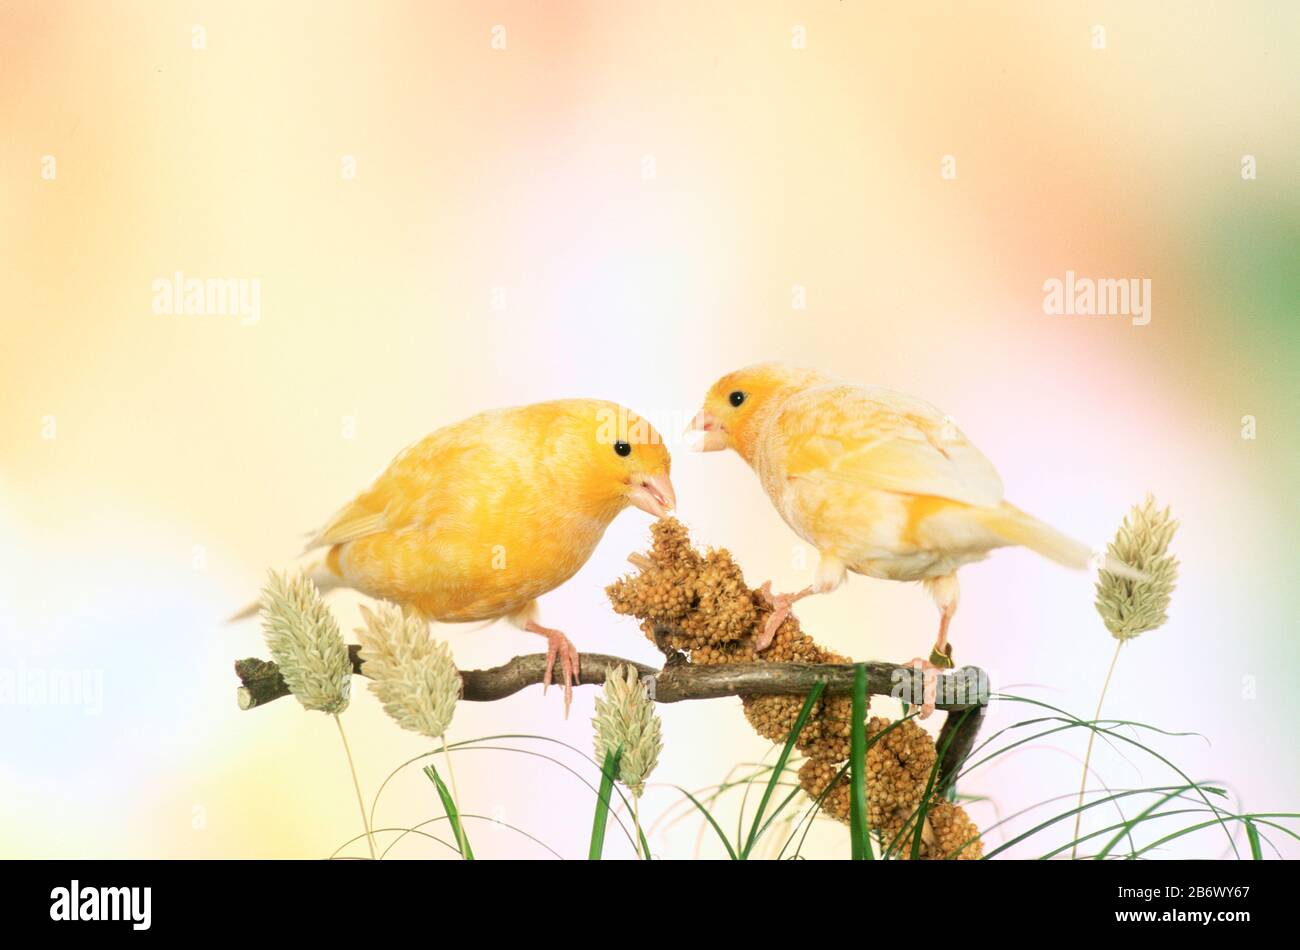 Canarie nazionali. Due uccelli gialli che mangiano uno spruzzo di miglio. Germania. Foto Stock